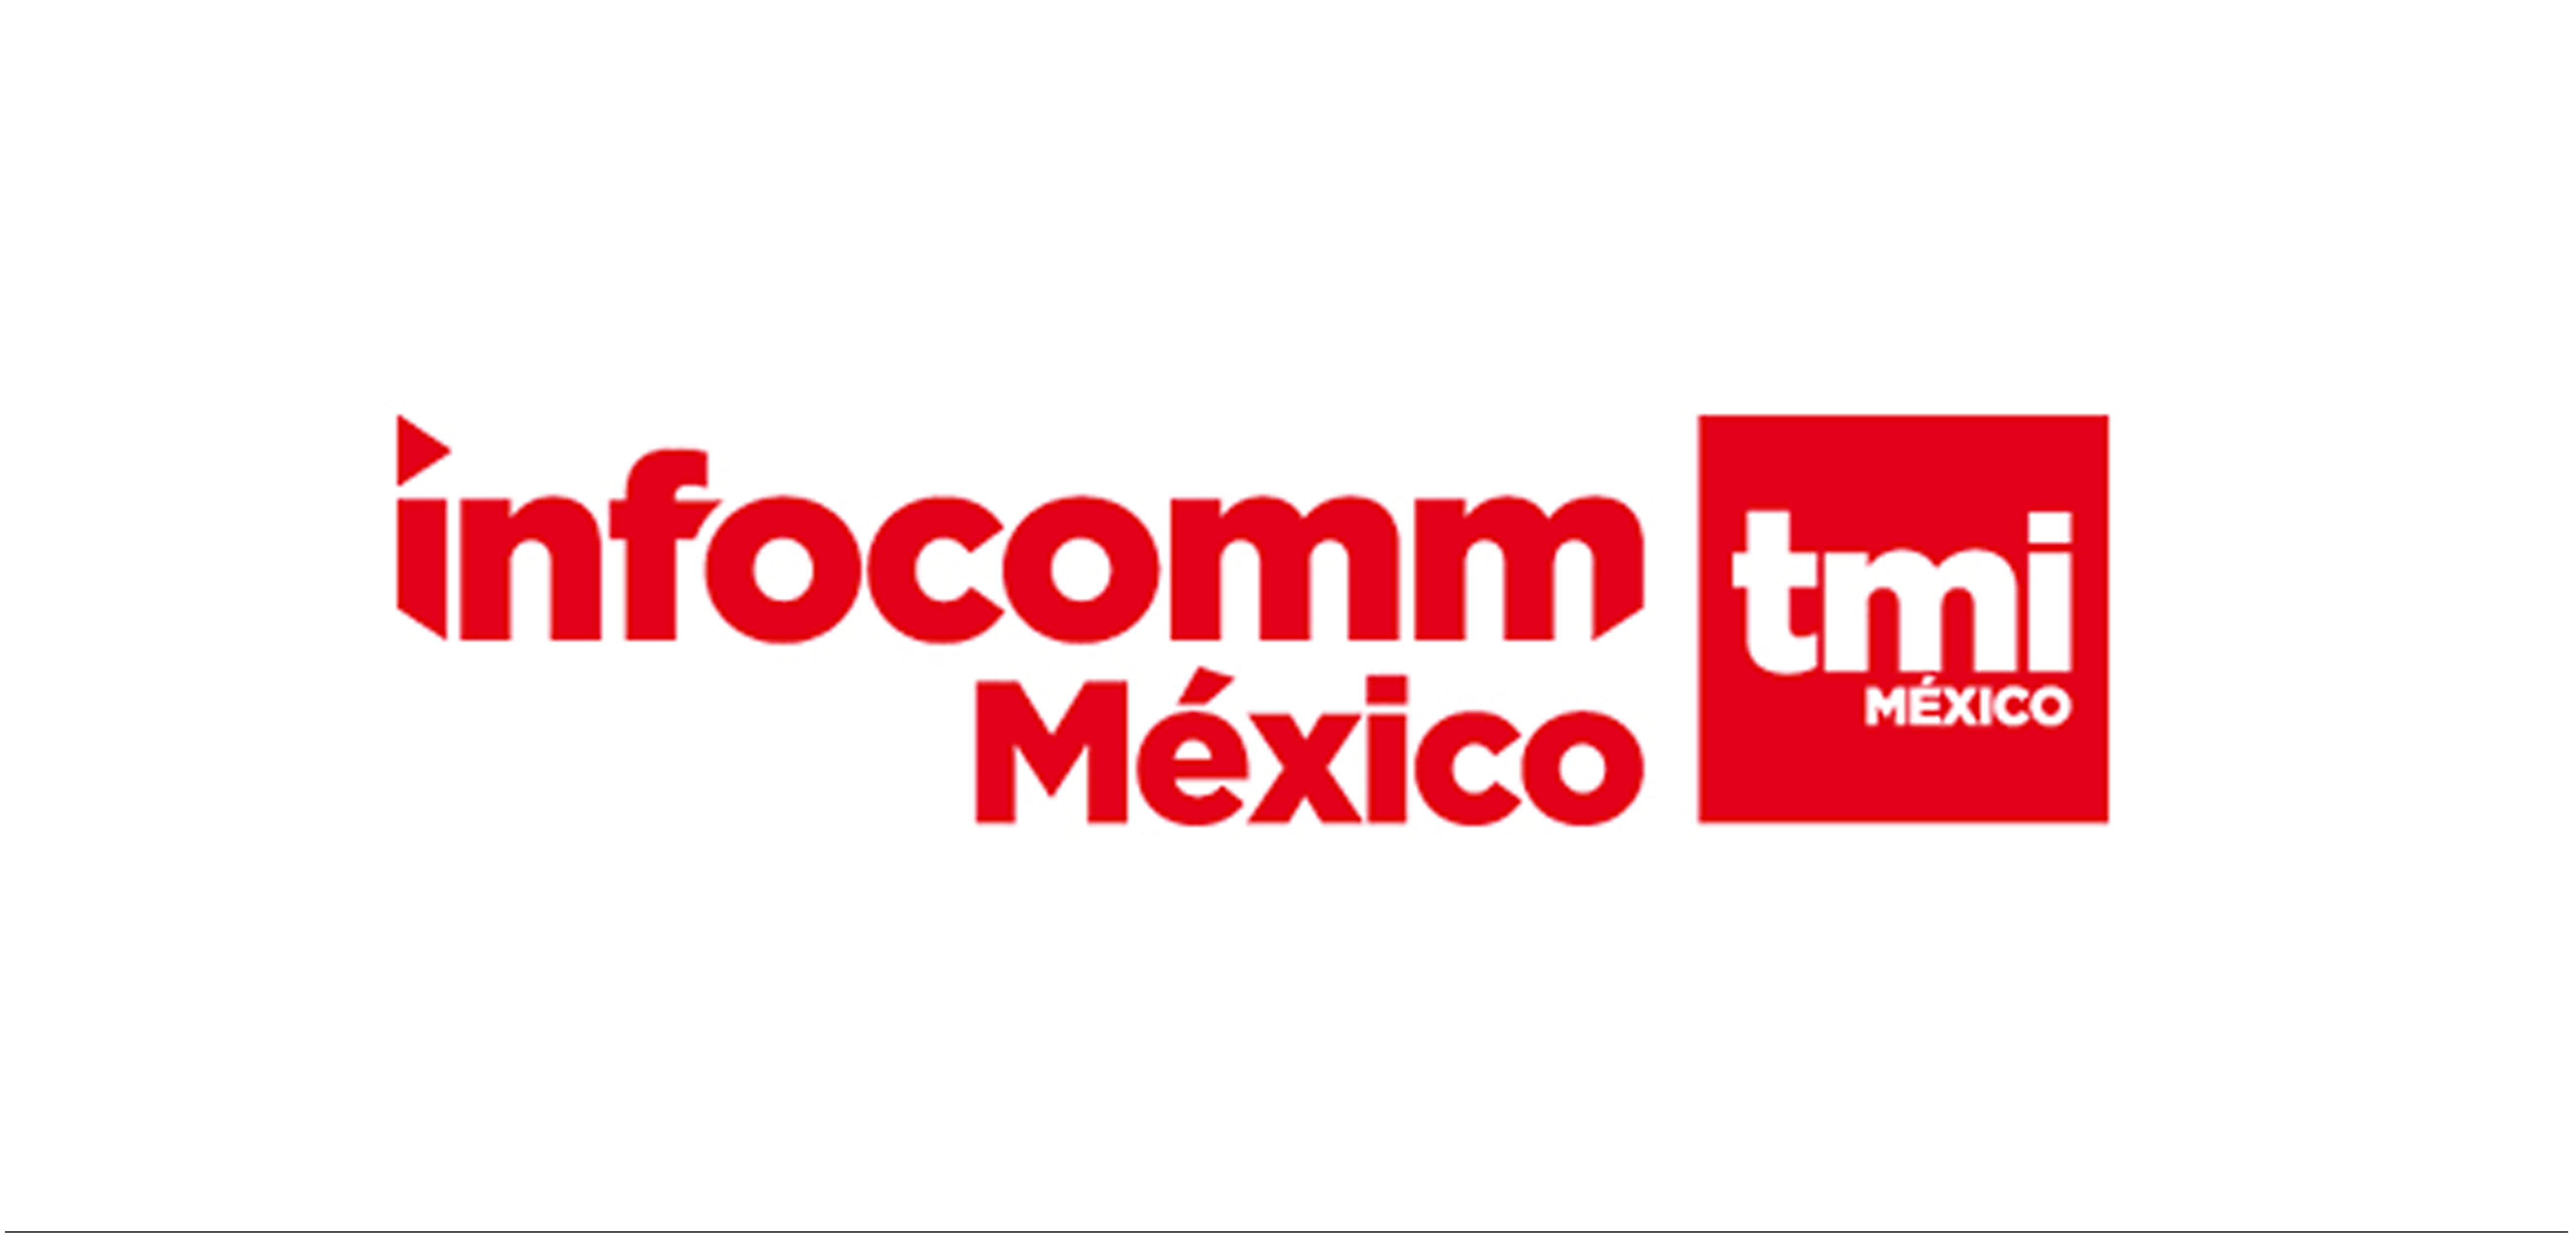 墨西哥信息通信公司